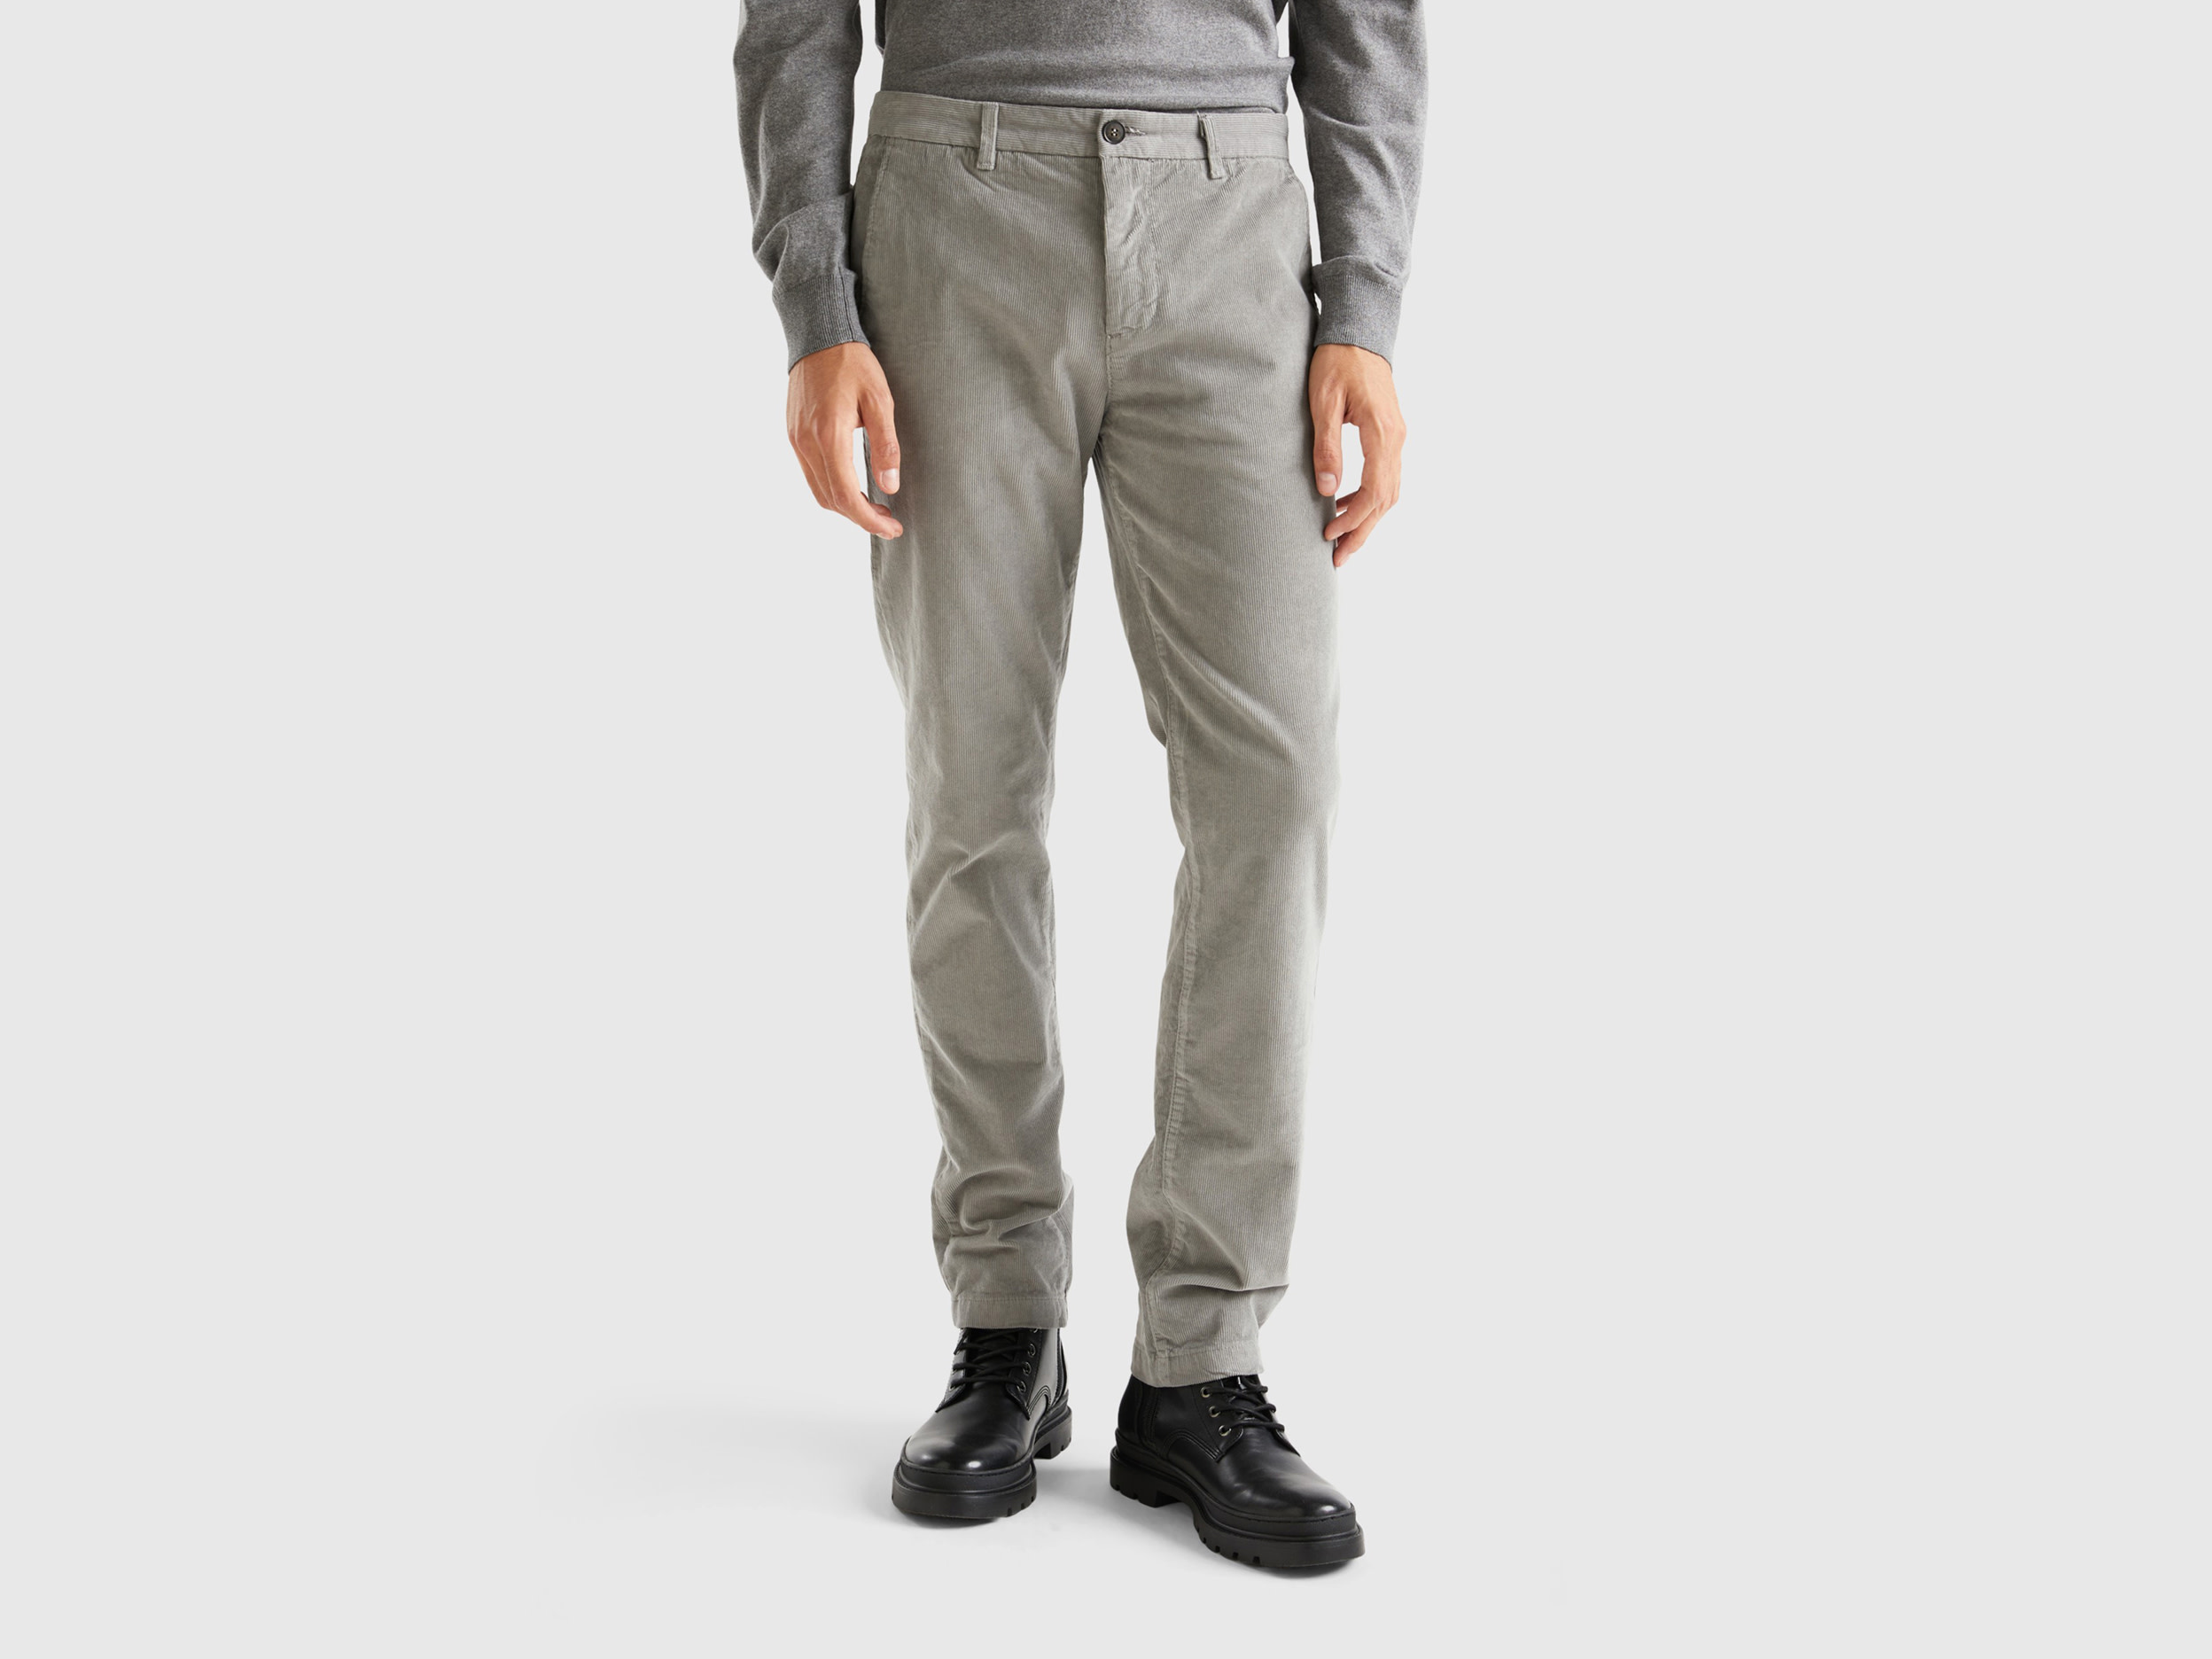 Benetton, Stretch Velvet Trousers, size 48, Light Gray, Men